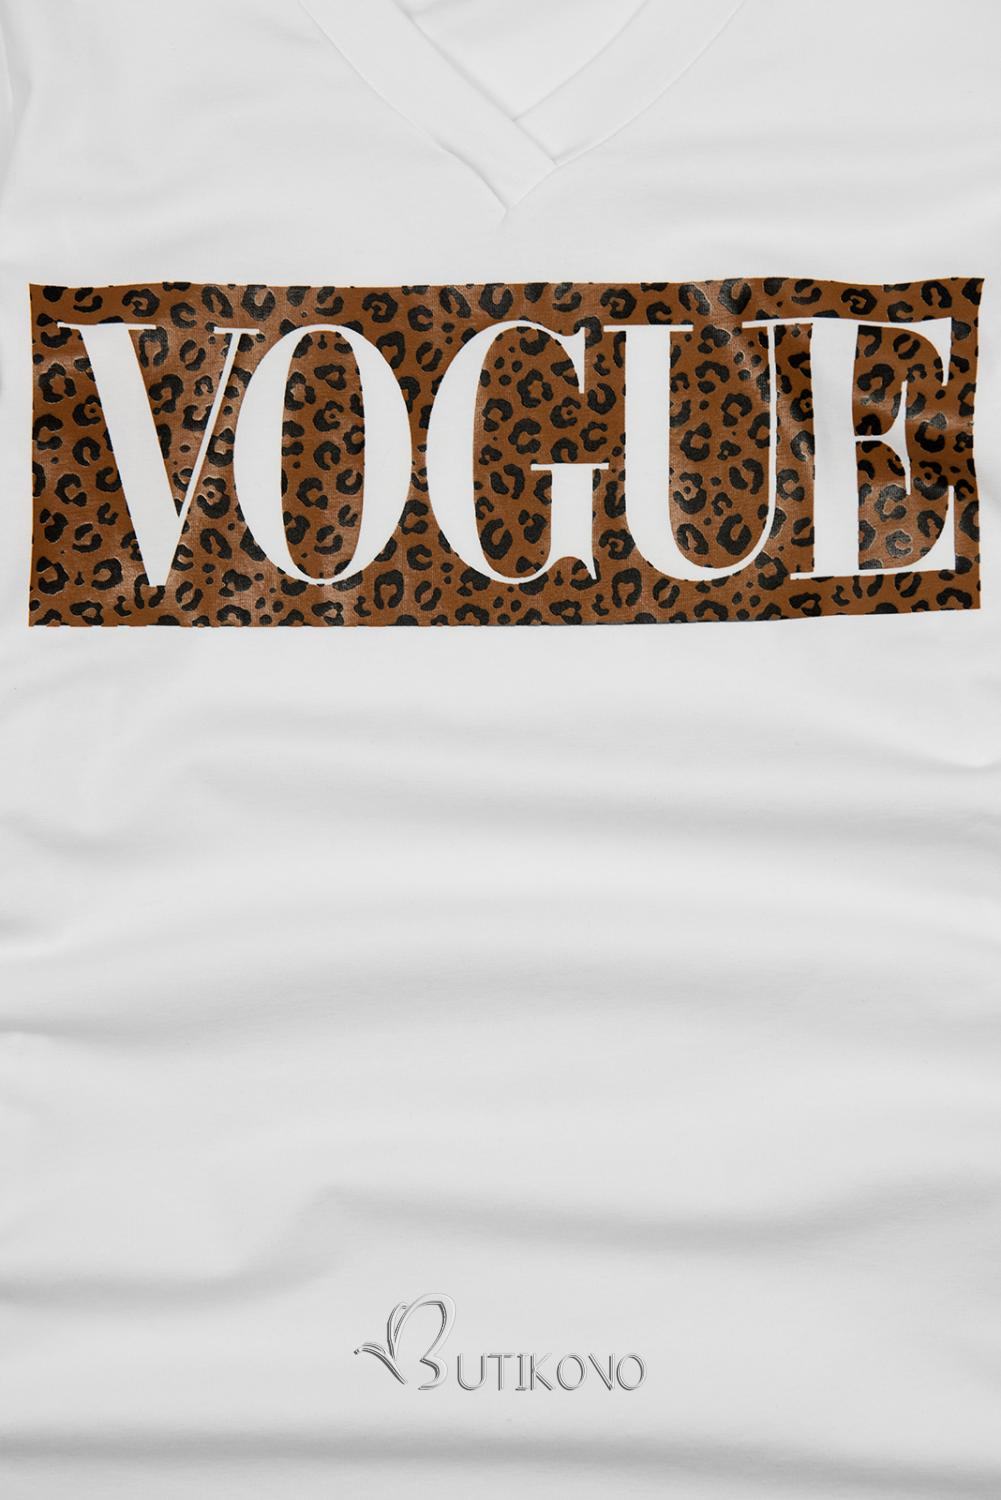 Biele tričko s nápisom VOGUE